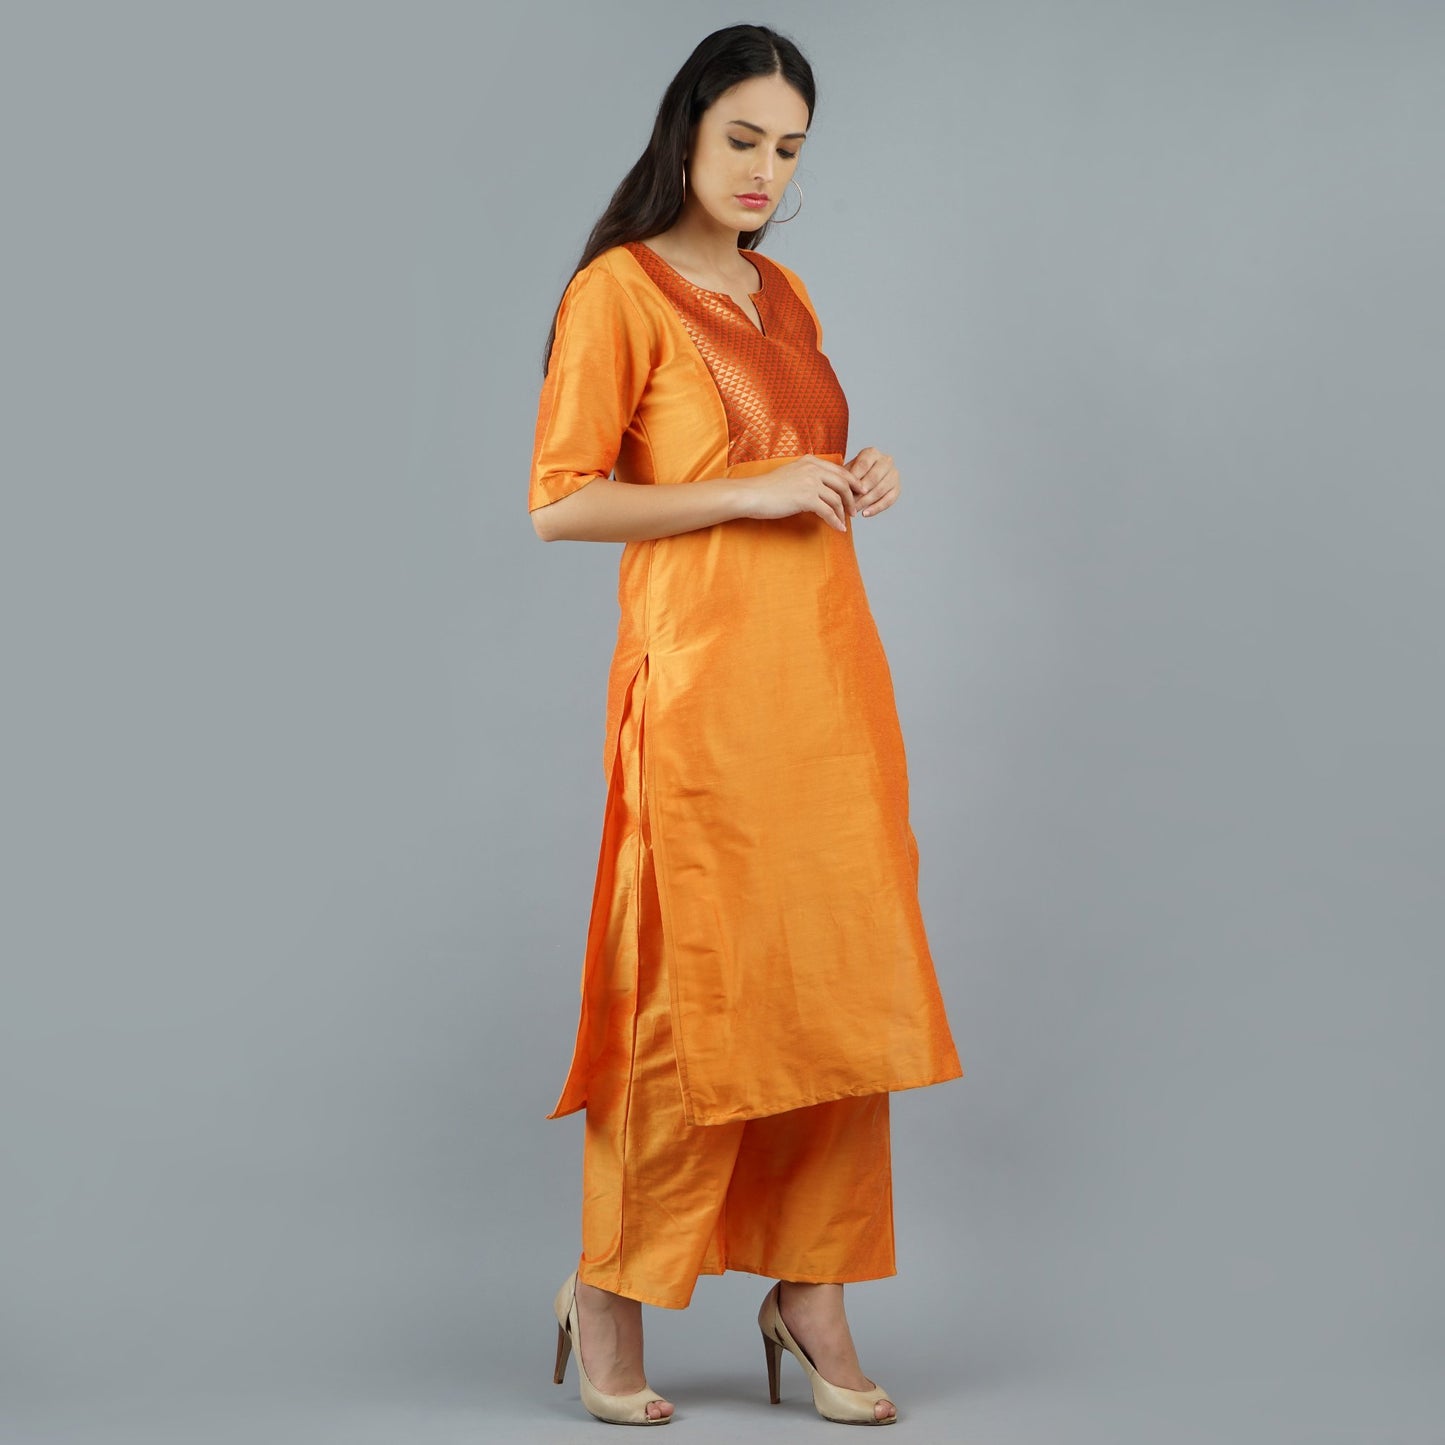 Darzaania Orange Cotton Kurtis for Women